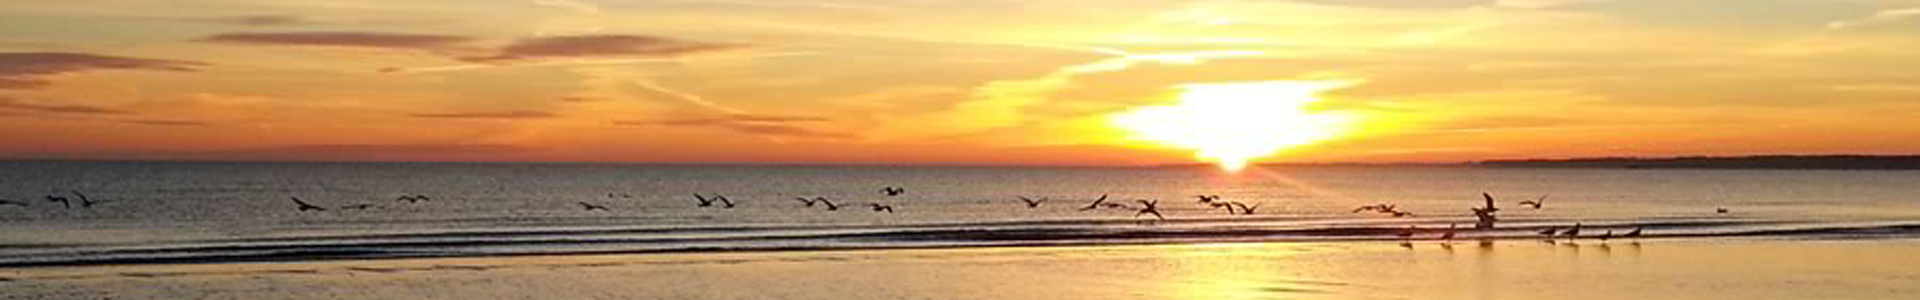 Familie am Strand der Ostsee im Sonnenuntergang 